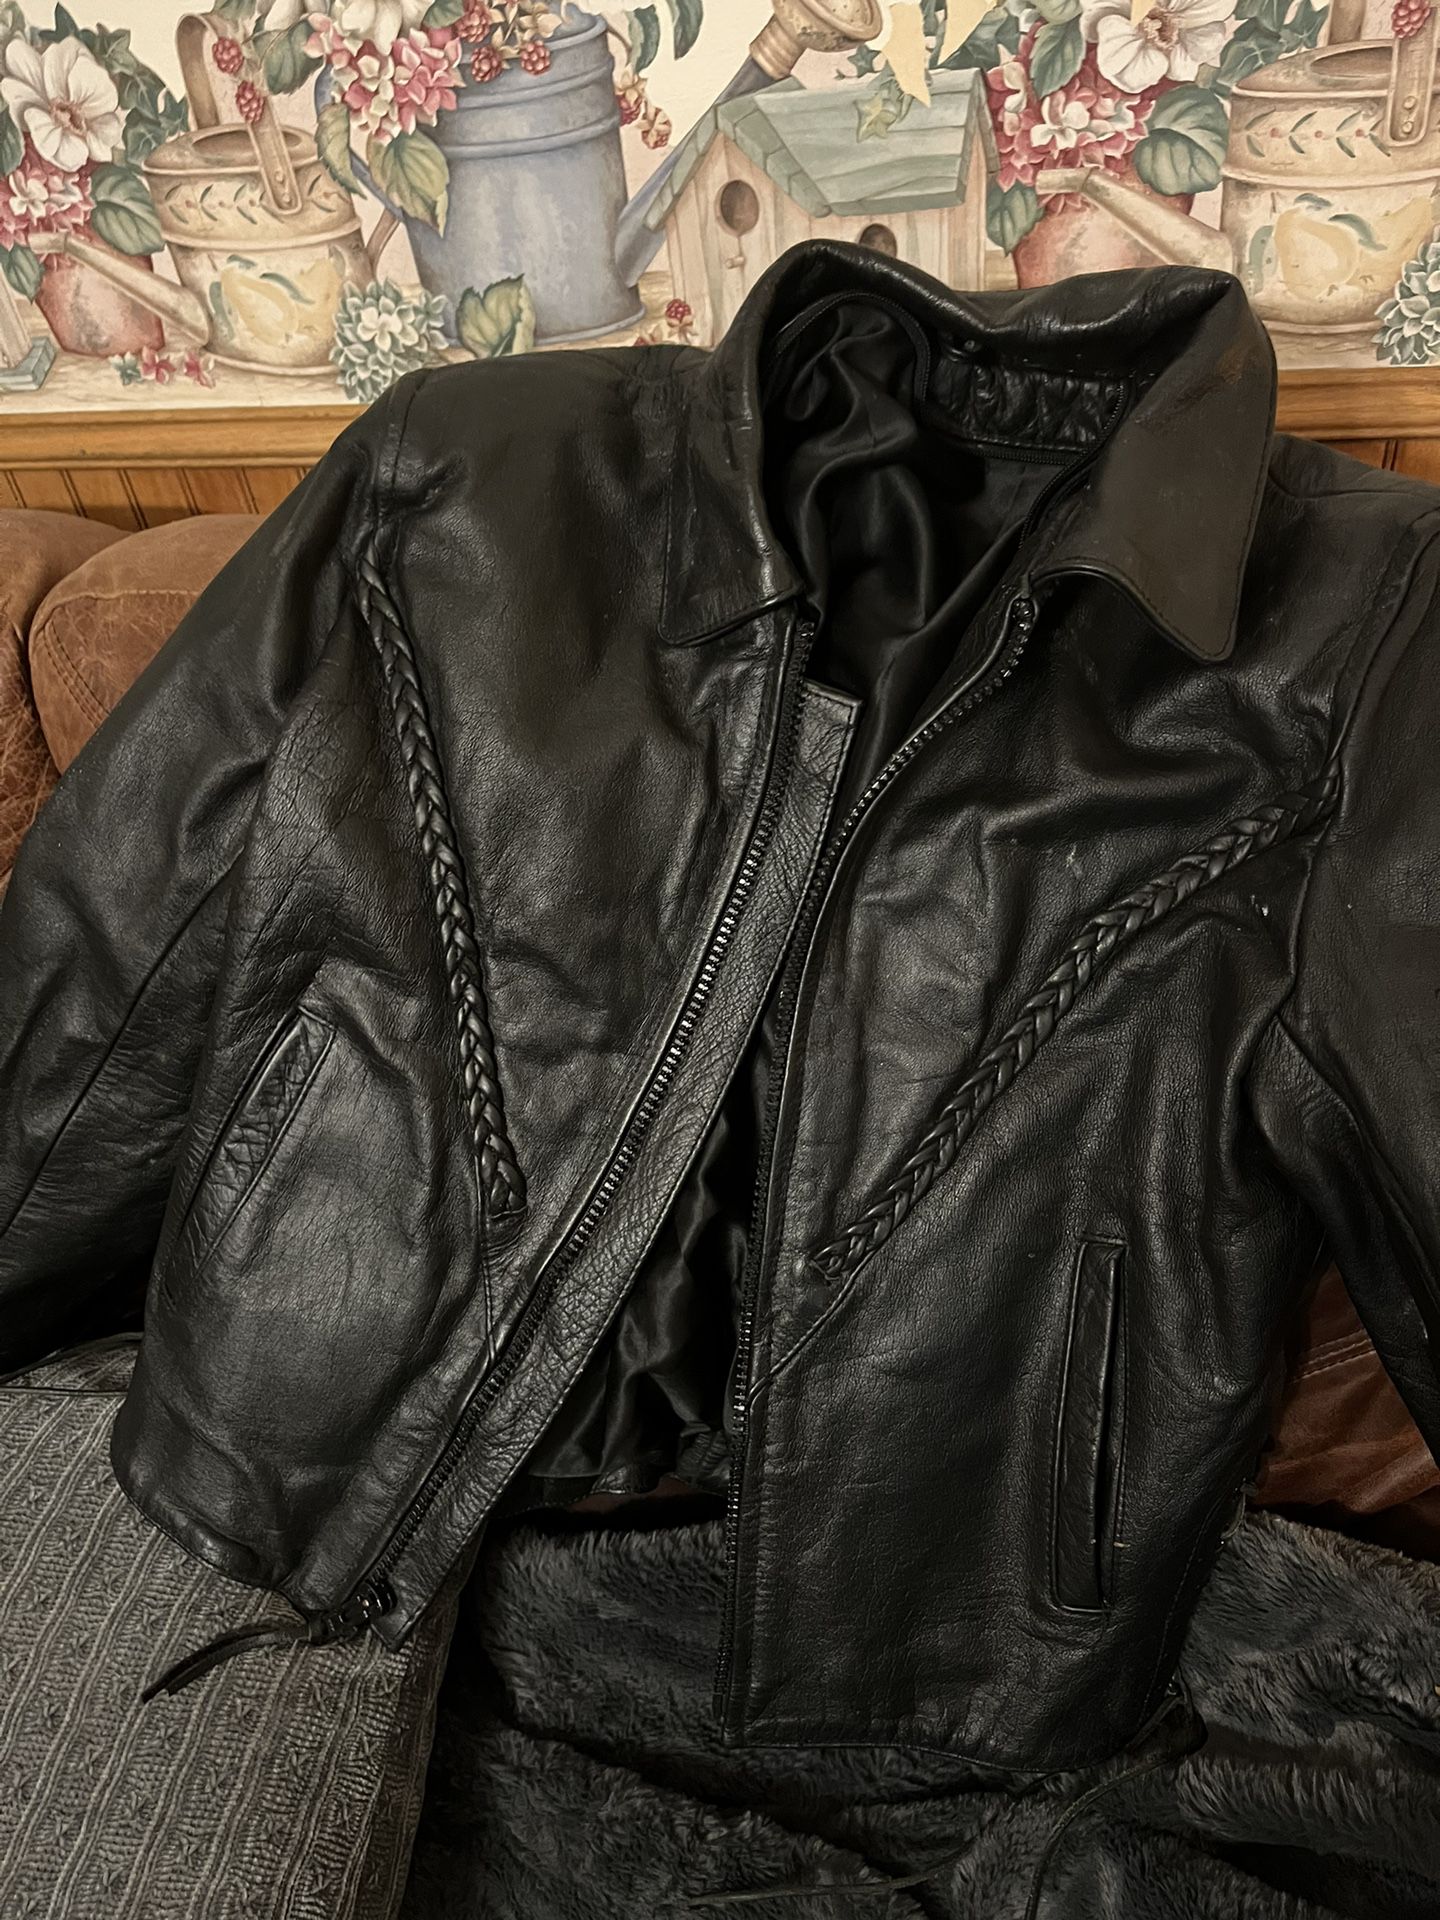 Leather Jacket - Harley Davidson style - Size M